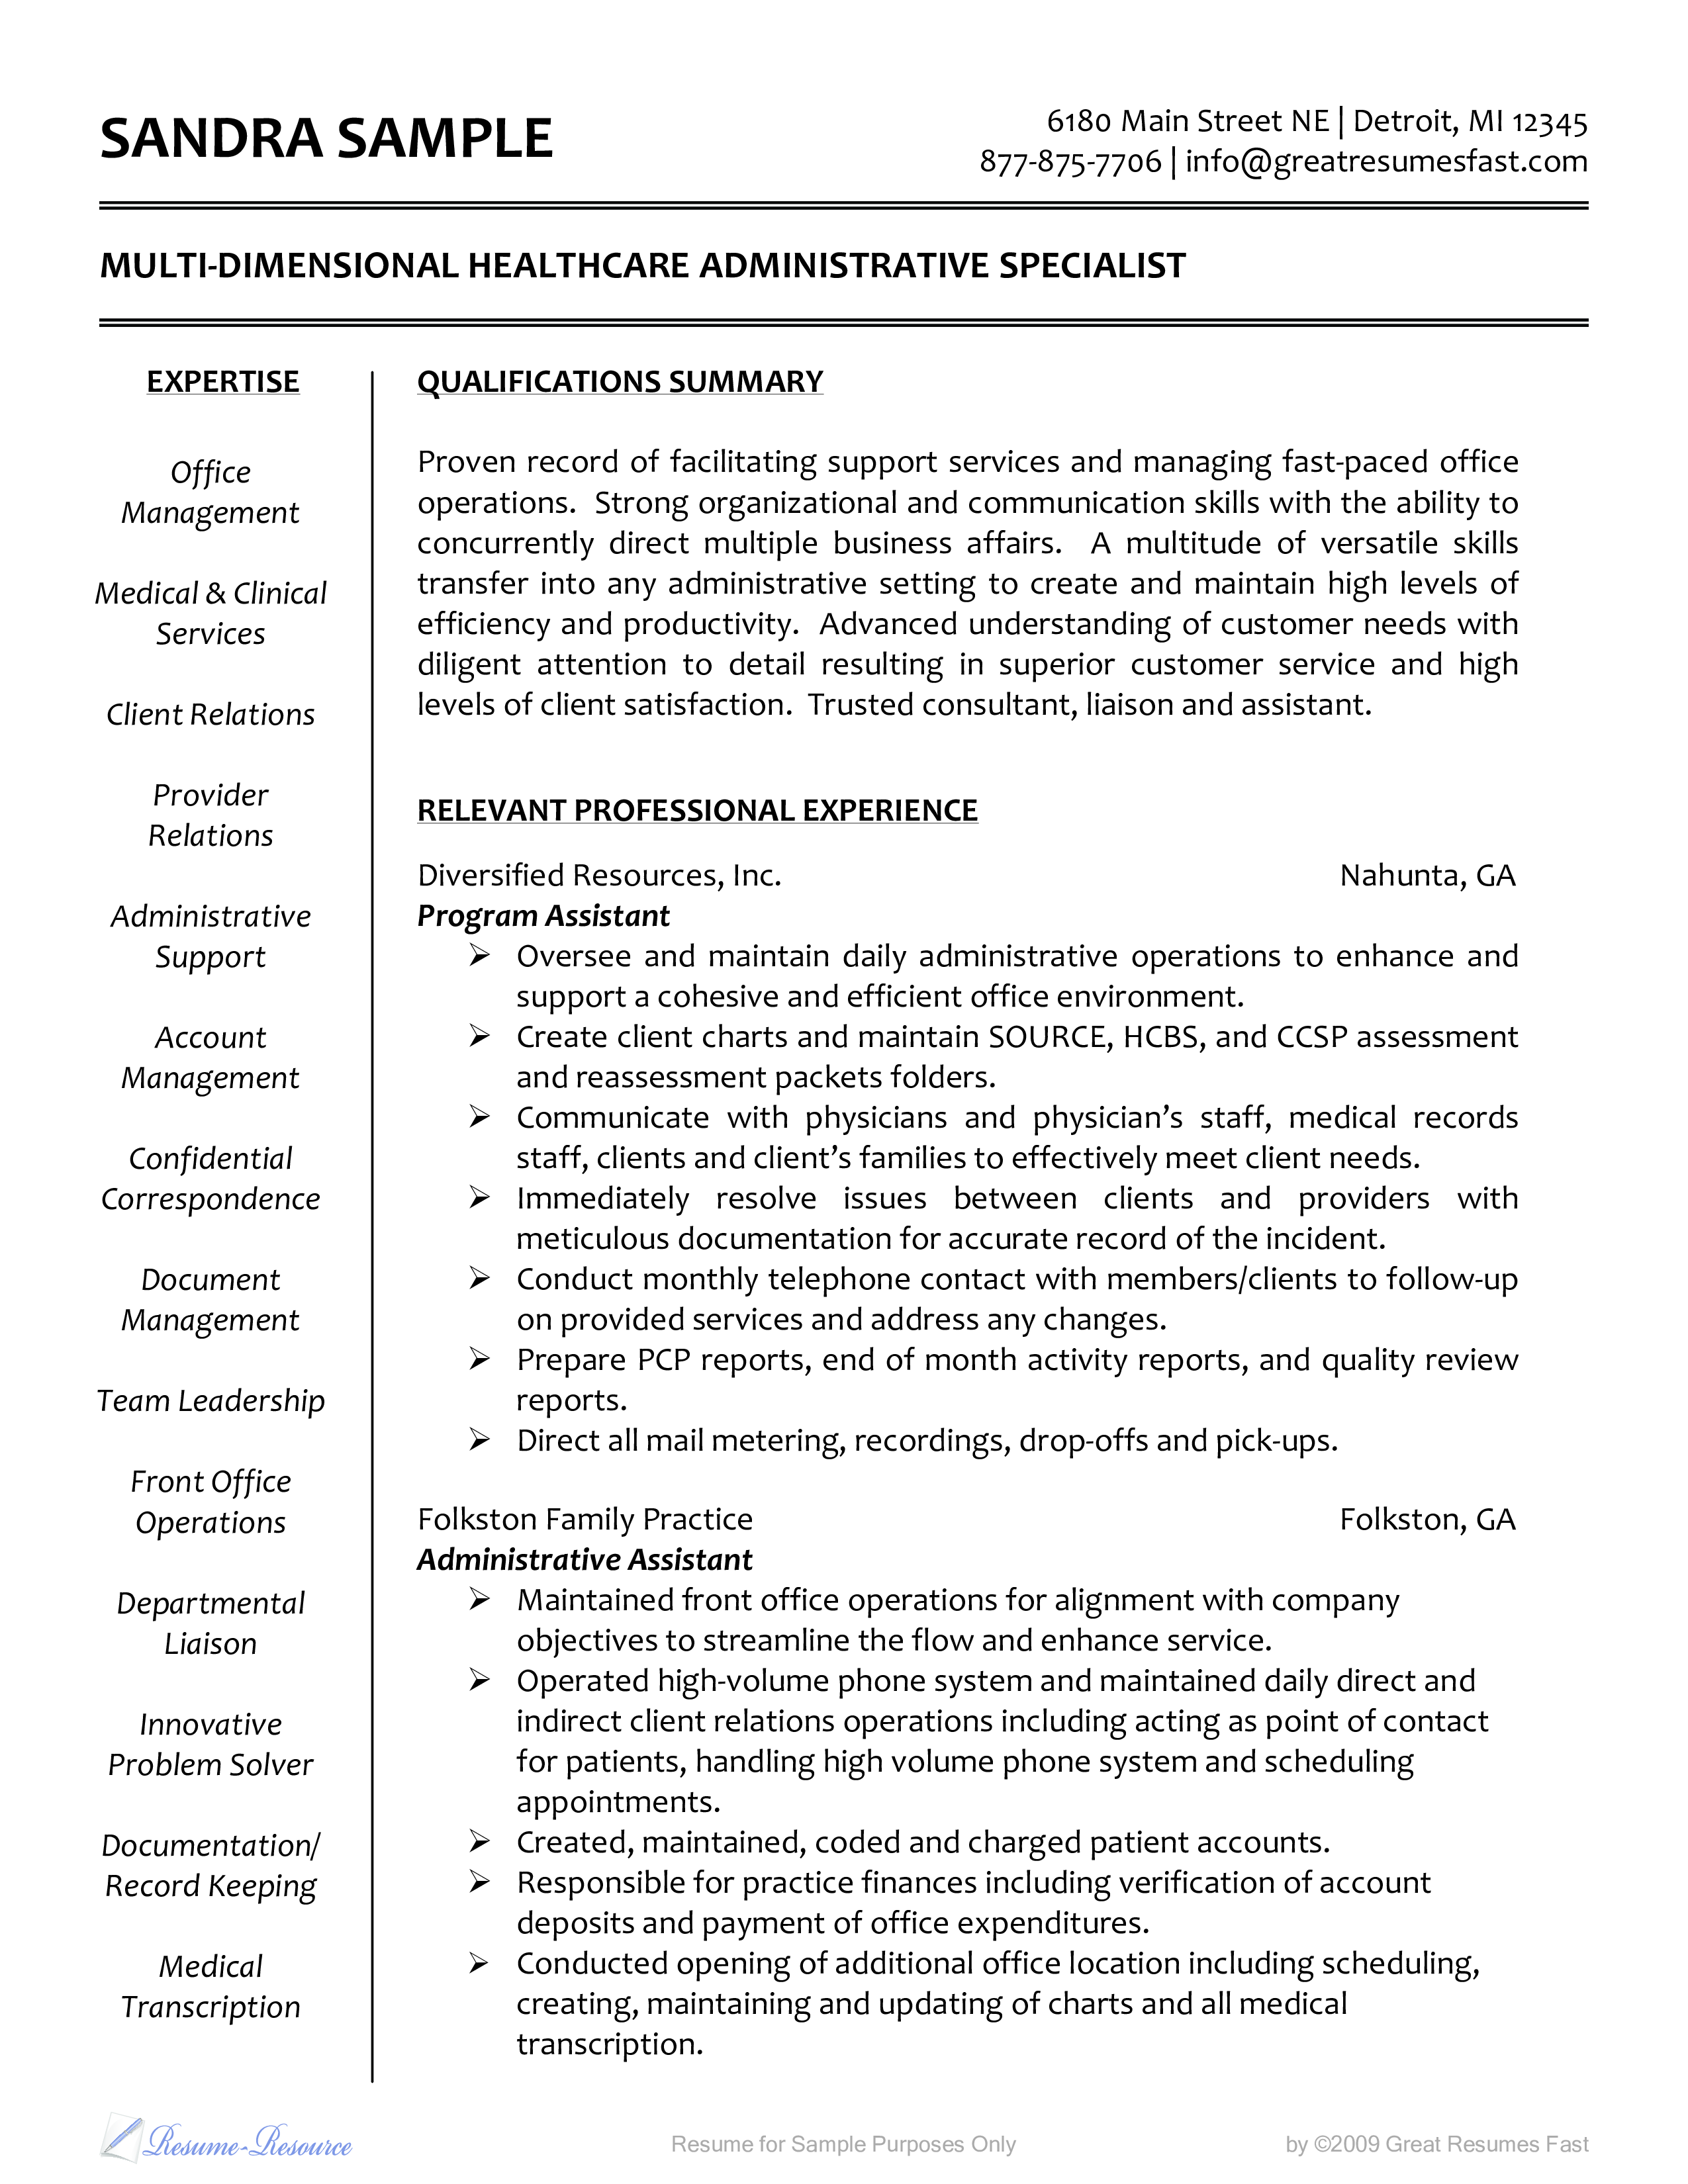 healthcare administrative resume plantilla imagen principal